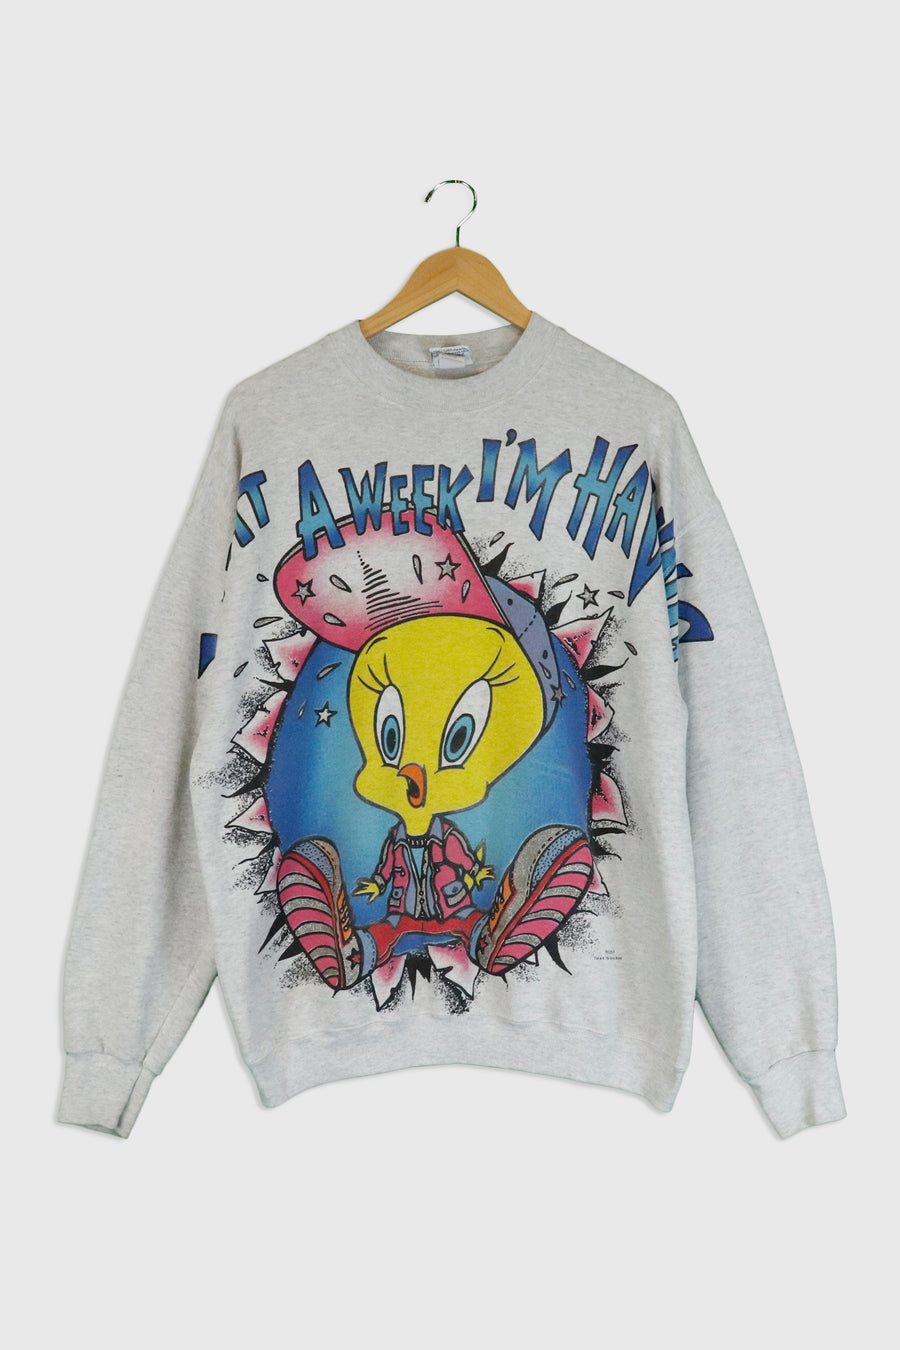 Vintage 1996 Looney Tunes Sparkly Tweety Bird Sweatshirt Sz XL